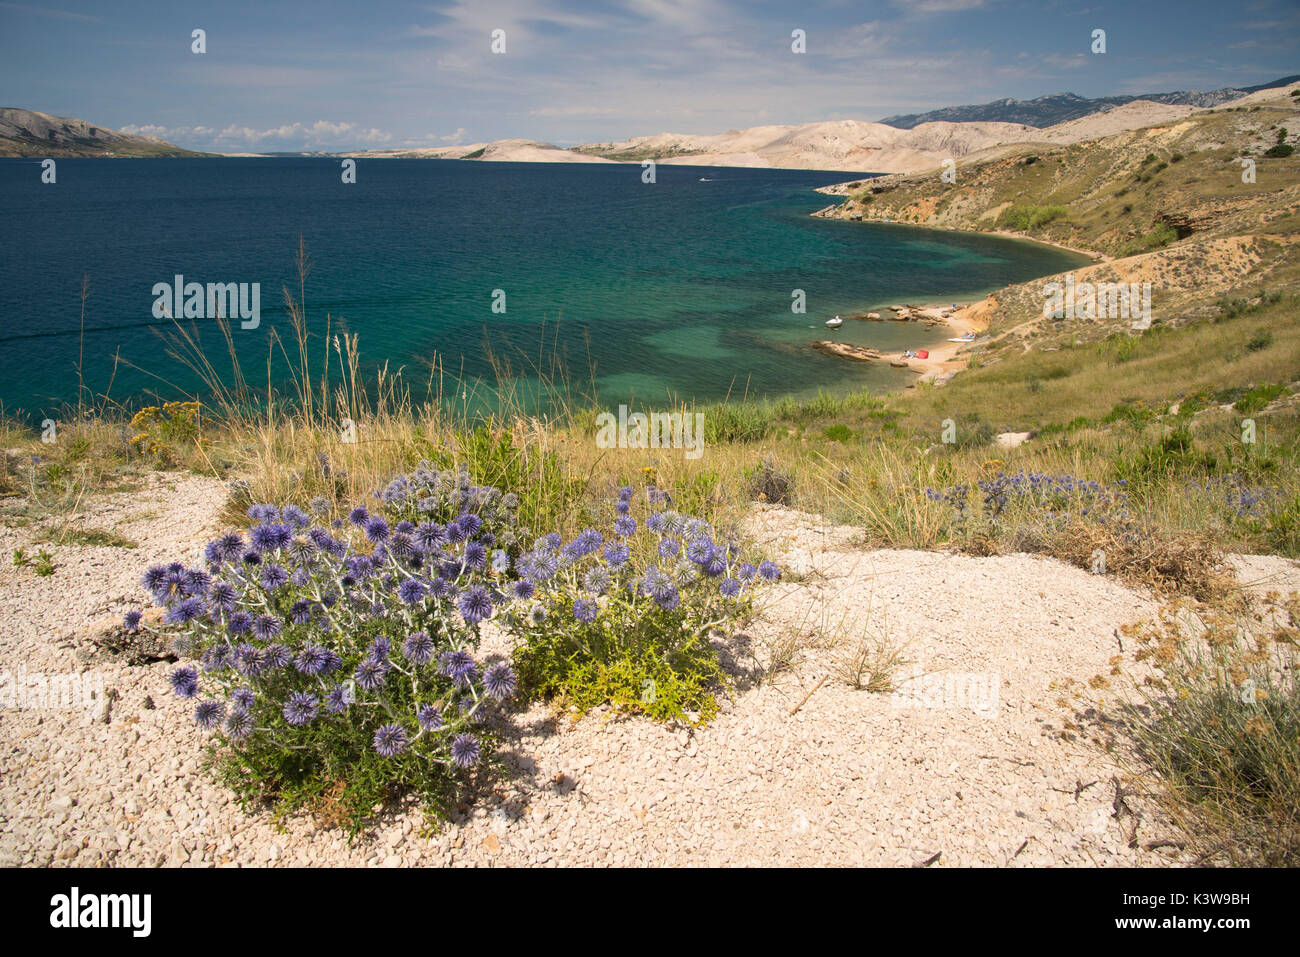 Vista dell'isola di Pag paesaggio, Croazia. A questo punto non vi è stata una splendida vista del mare e i fiori dietro la spiaggia. Foto Stock